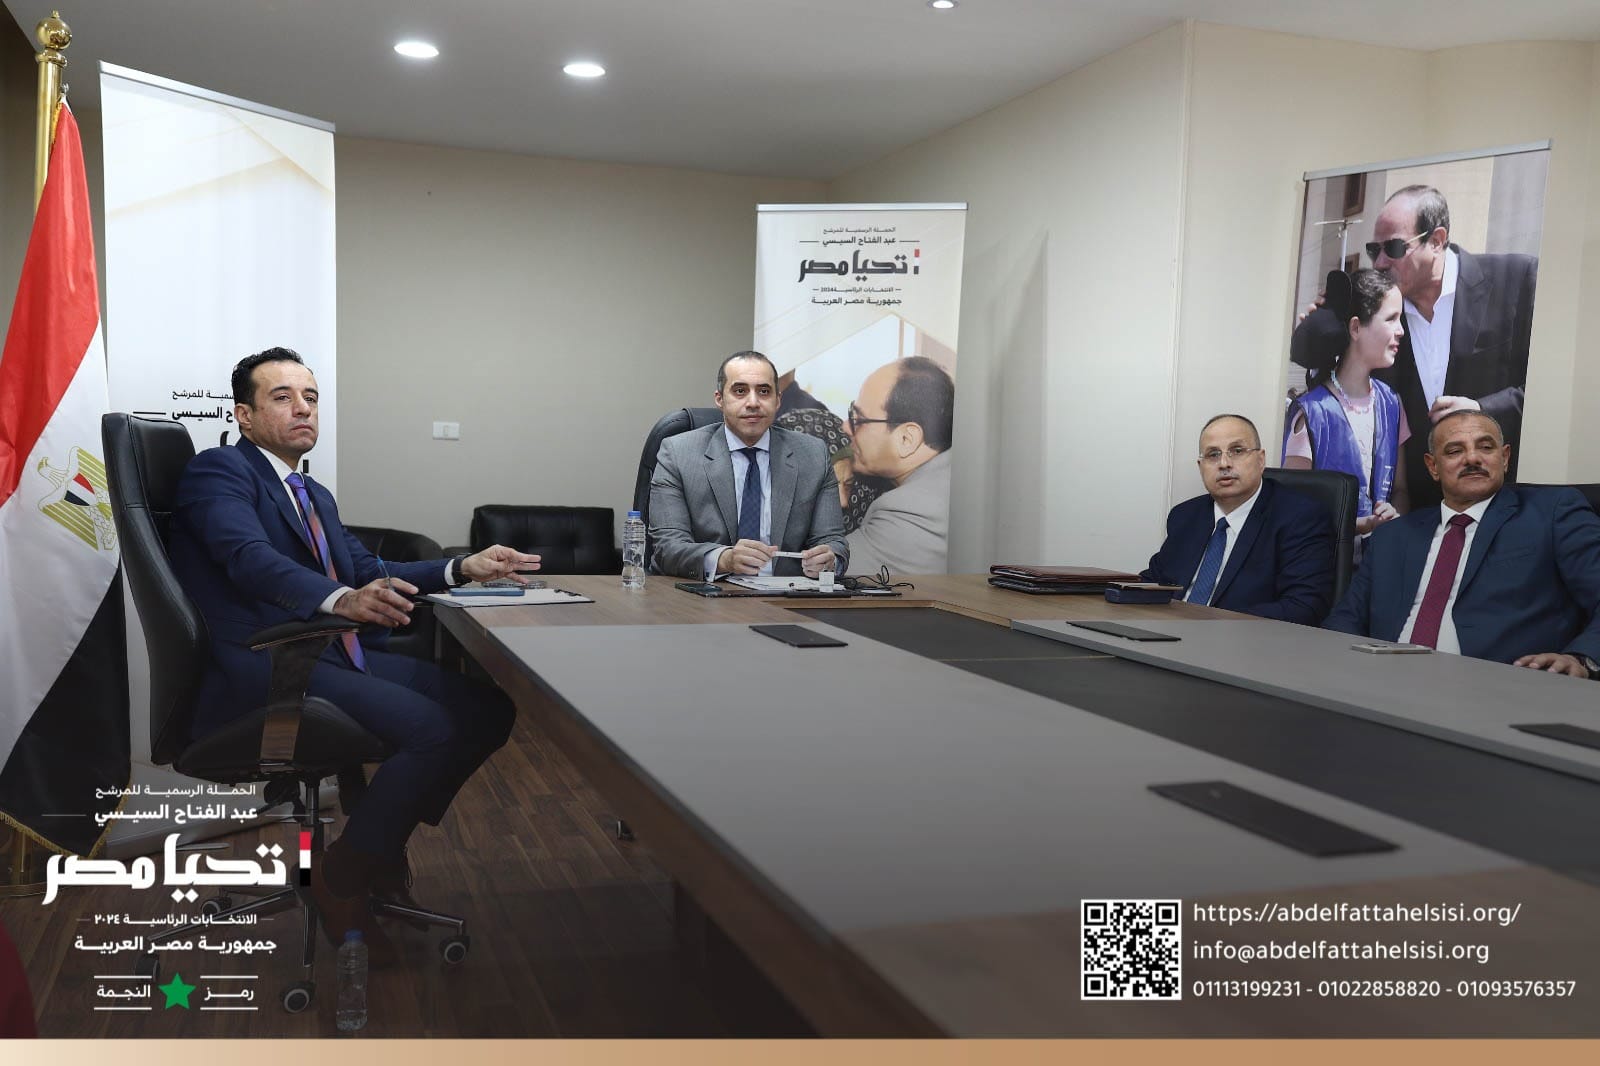 الحملة الرسمية للمرشح الرئاسي عبد الفتاح السيسي تلتقي بالمصريين في الخارج عبر تقنية الفيديو كونفراس (5)